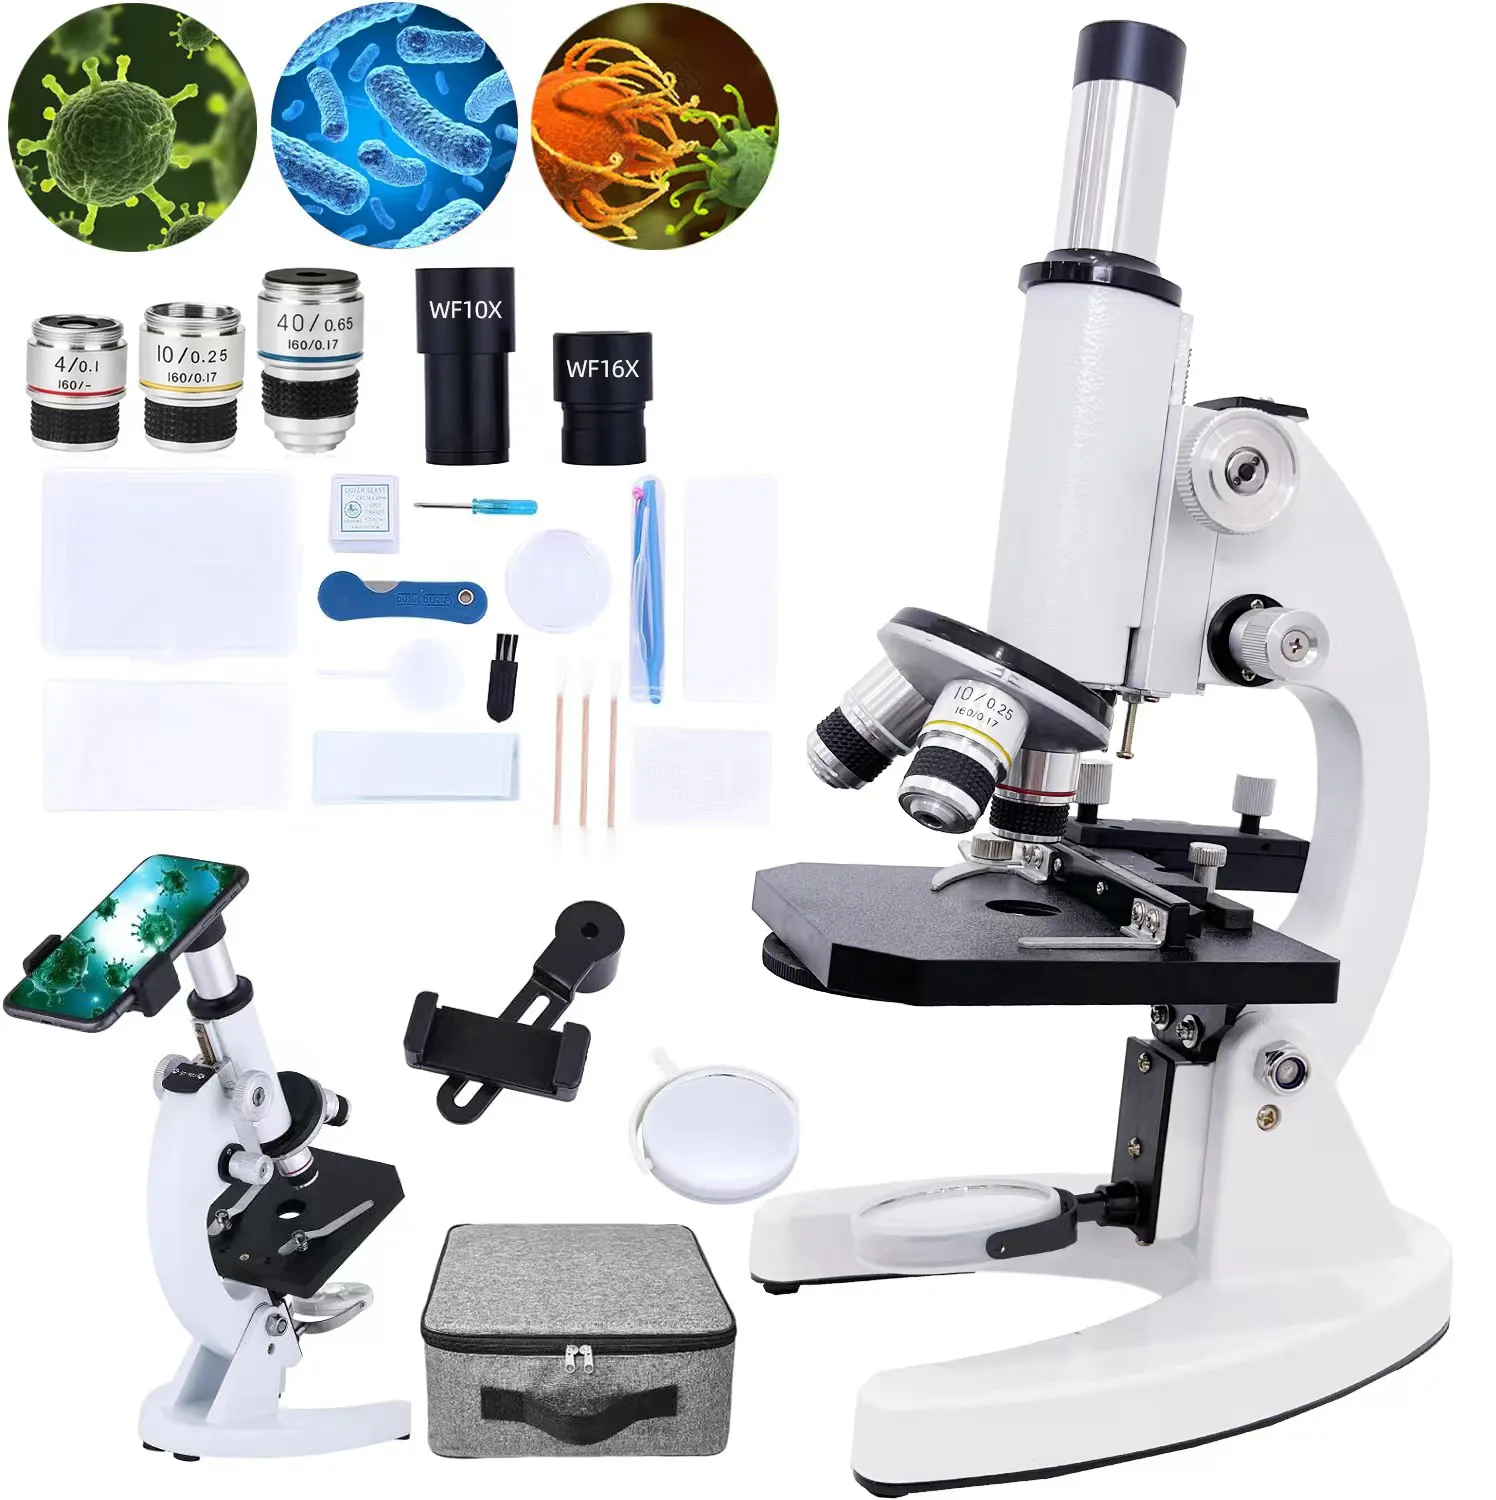 Microscopio XSP-02 40X-640 para niños, microscopio biológico, precio de fábrica, juguetes para escuela secundaria